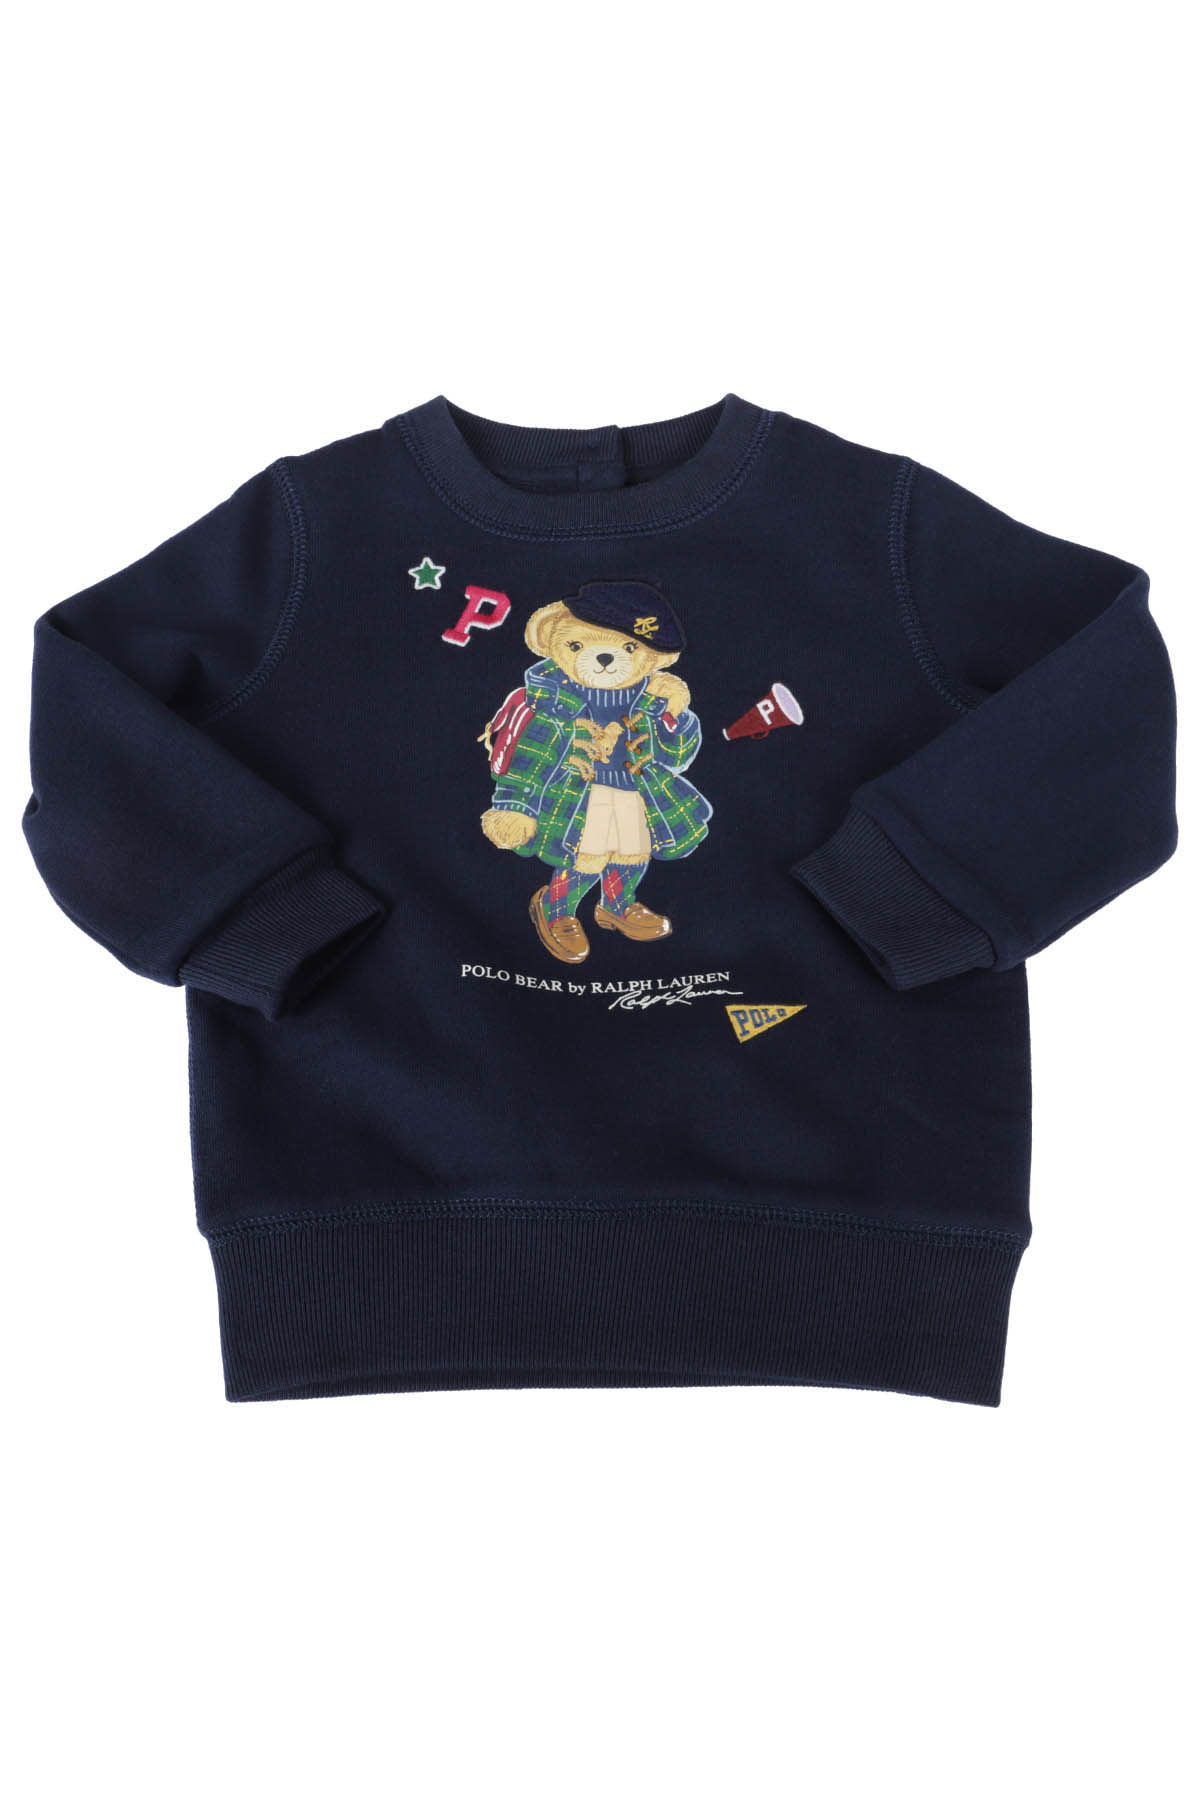 Polo Ralph Lauren Babies' Sweatshirt In Navy